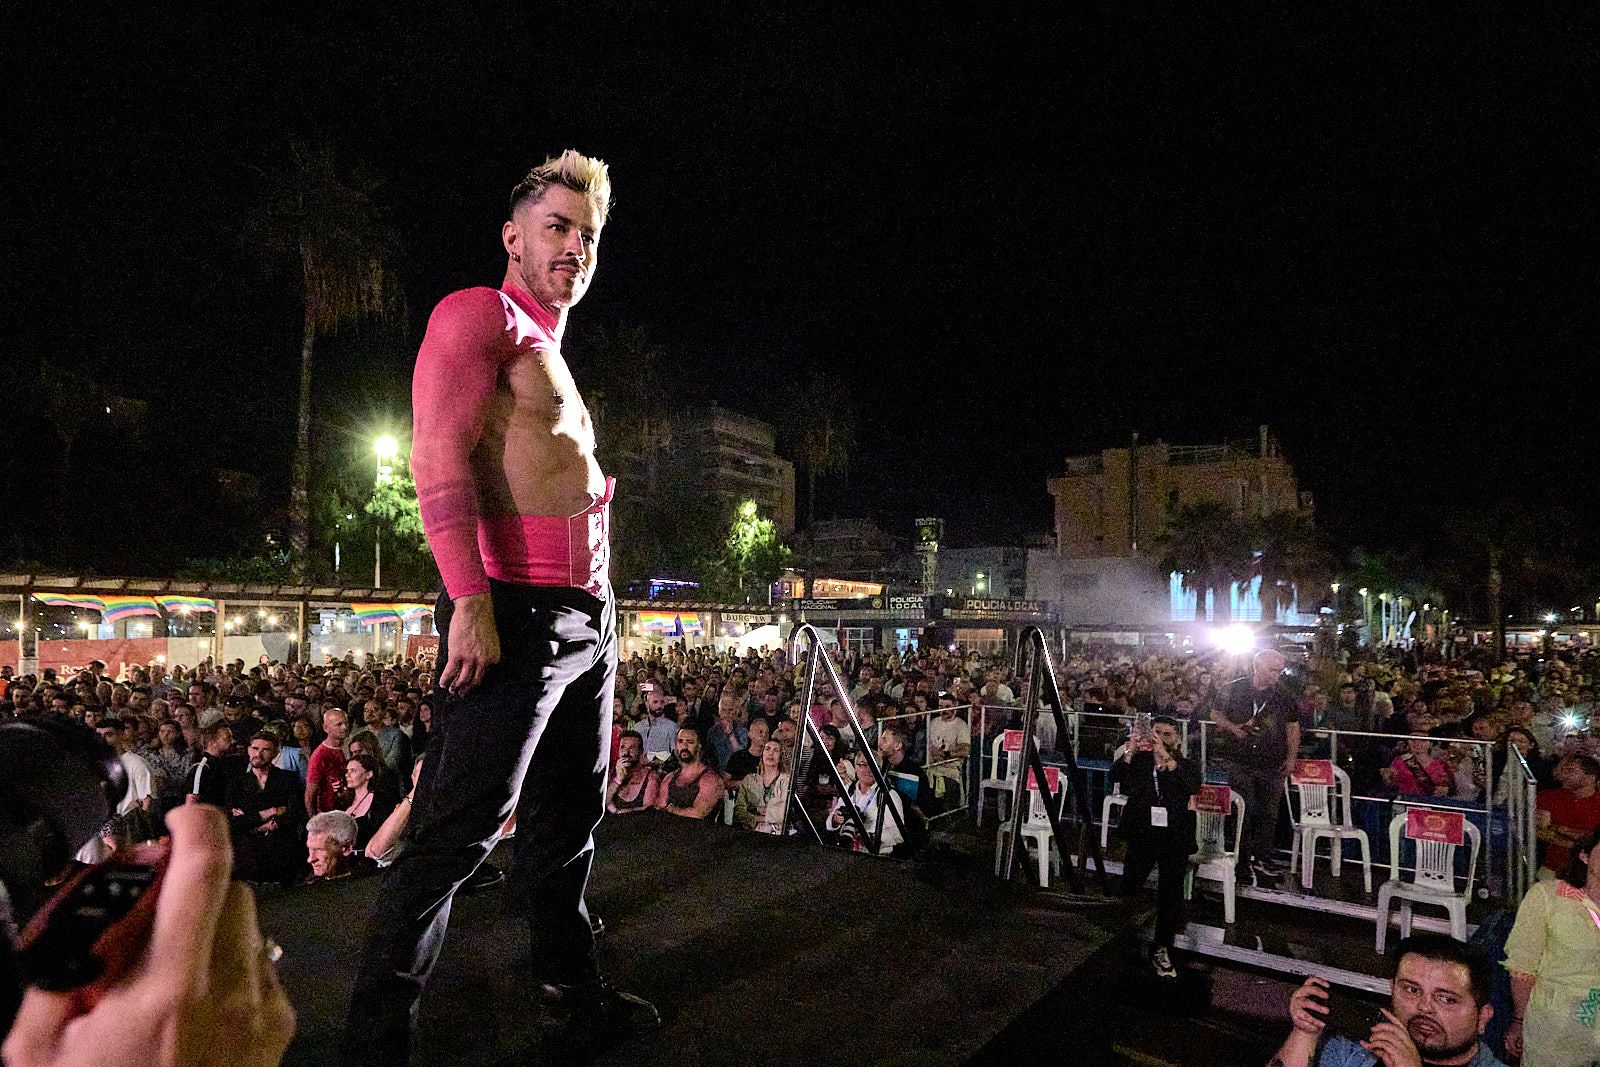 El concurso Mr. Gay Comunitat Valenciana de Gandia, en imágenes